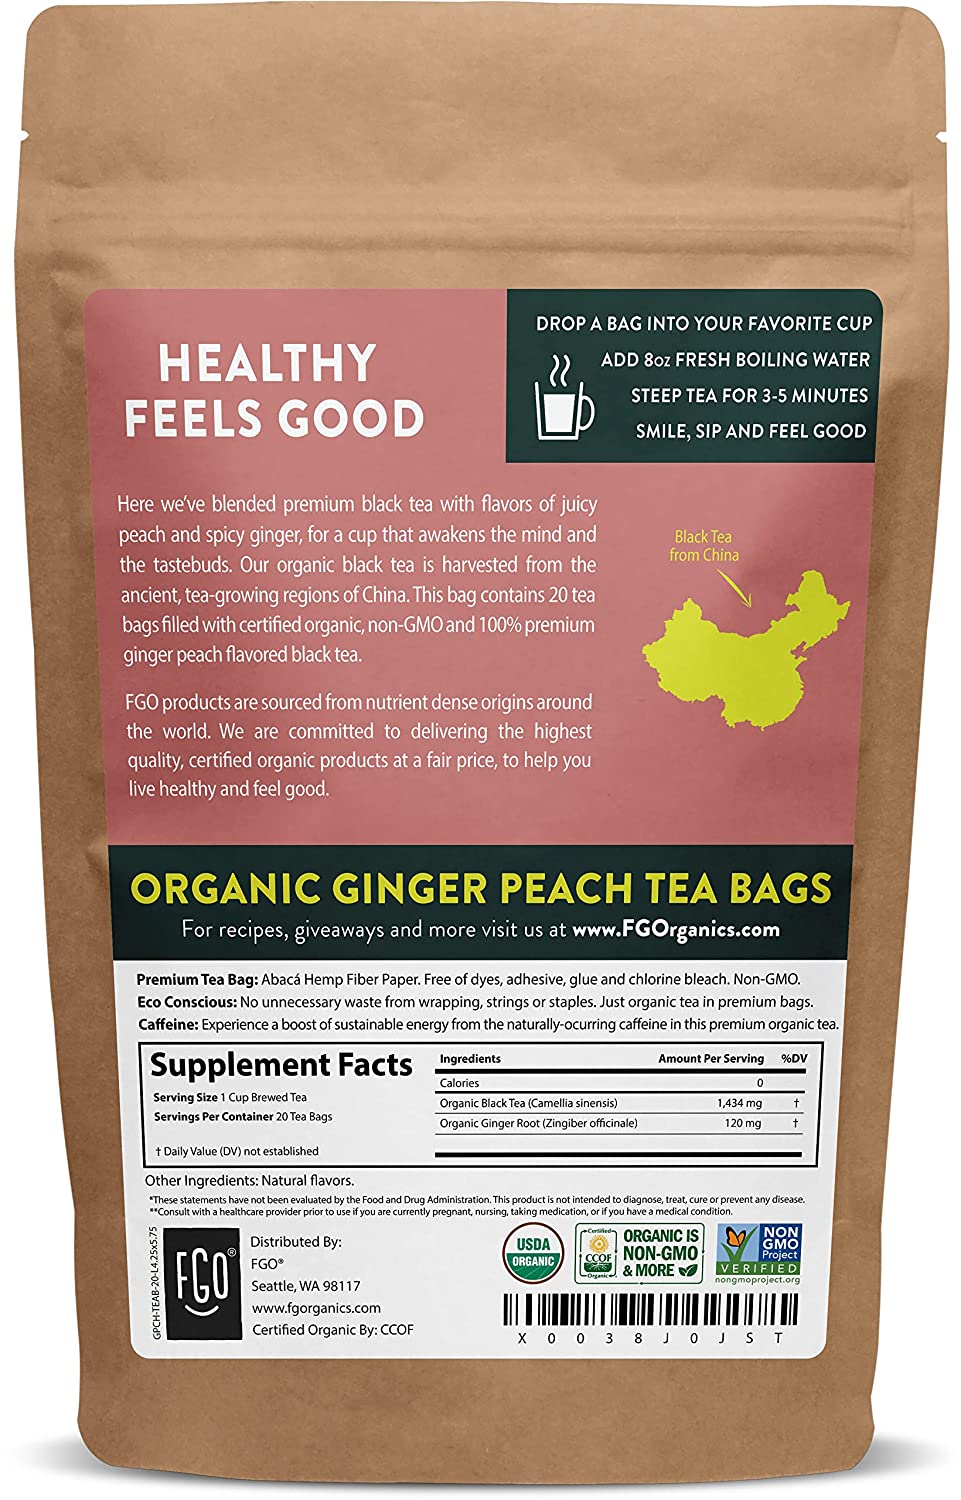 Ginger Peach Iced Tea - Large Black Tea Pouches